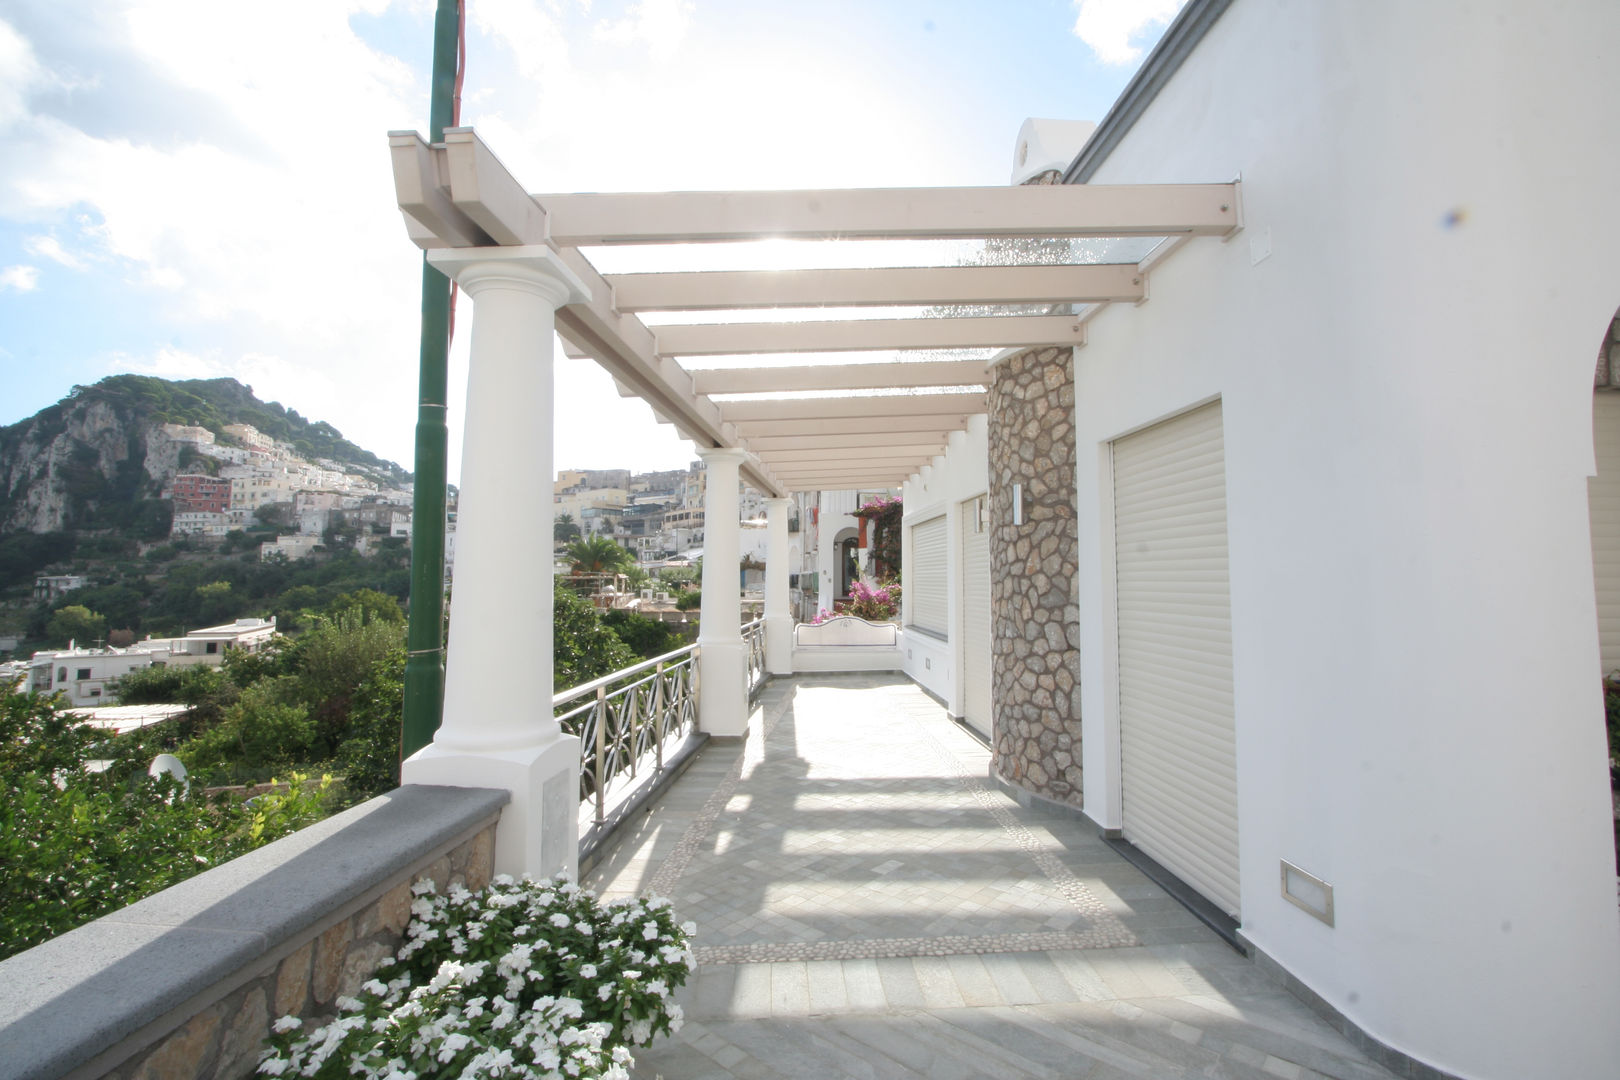 Villa a Capri: Minimalismo e Bellezza in un unico post, Imperatore Architetti Imperatore Architetti ระเบียง, นอกชาน